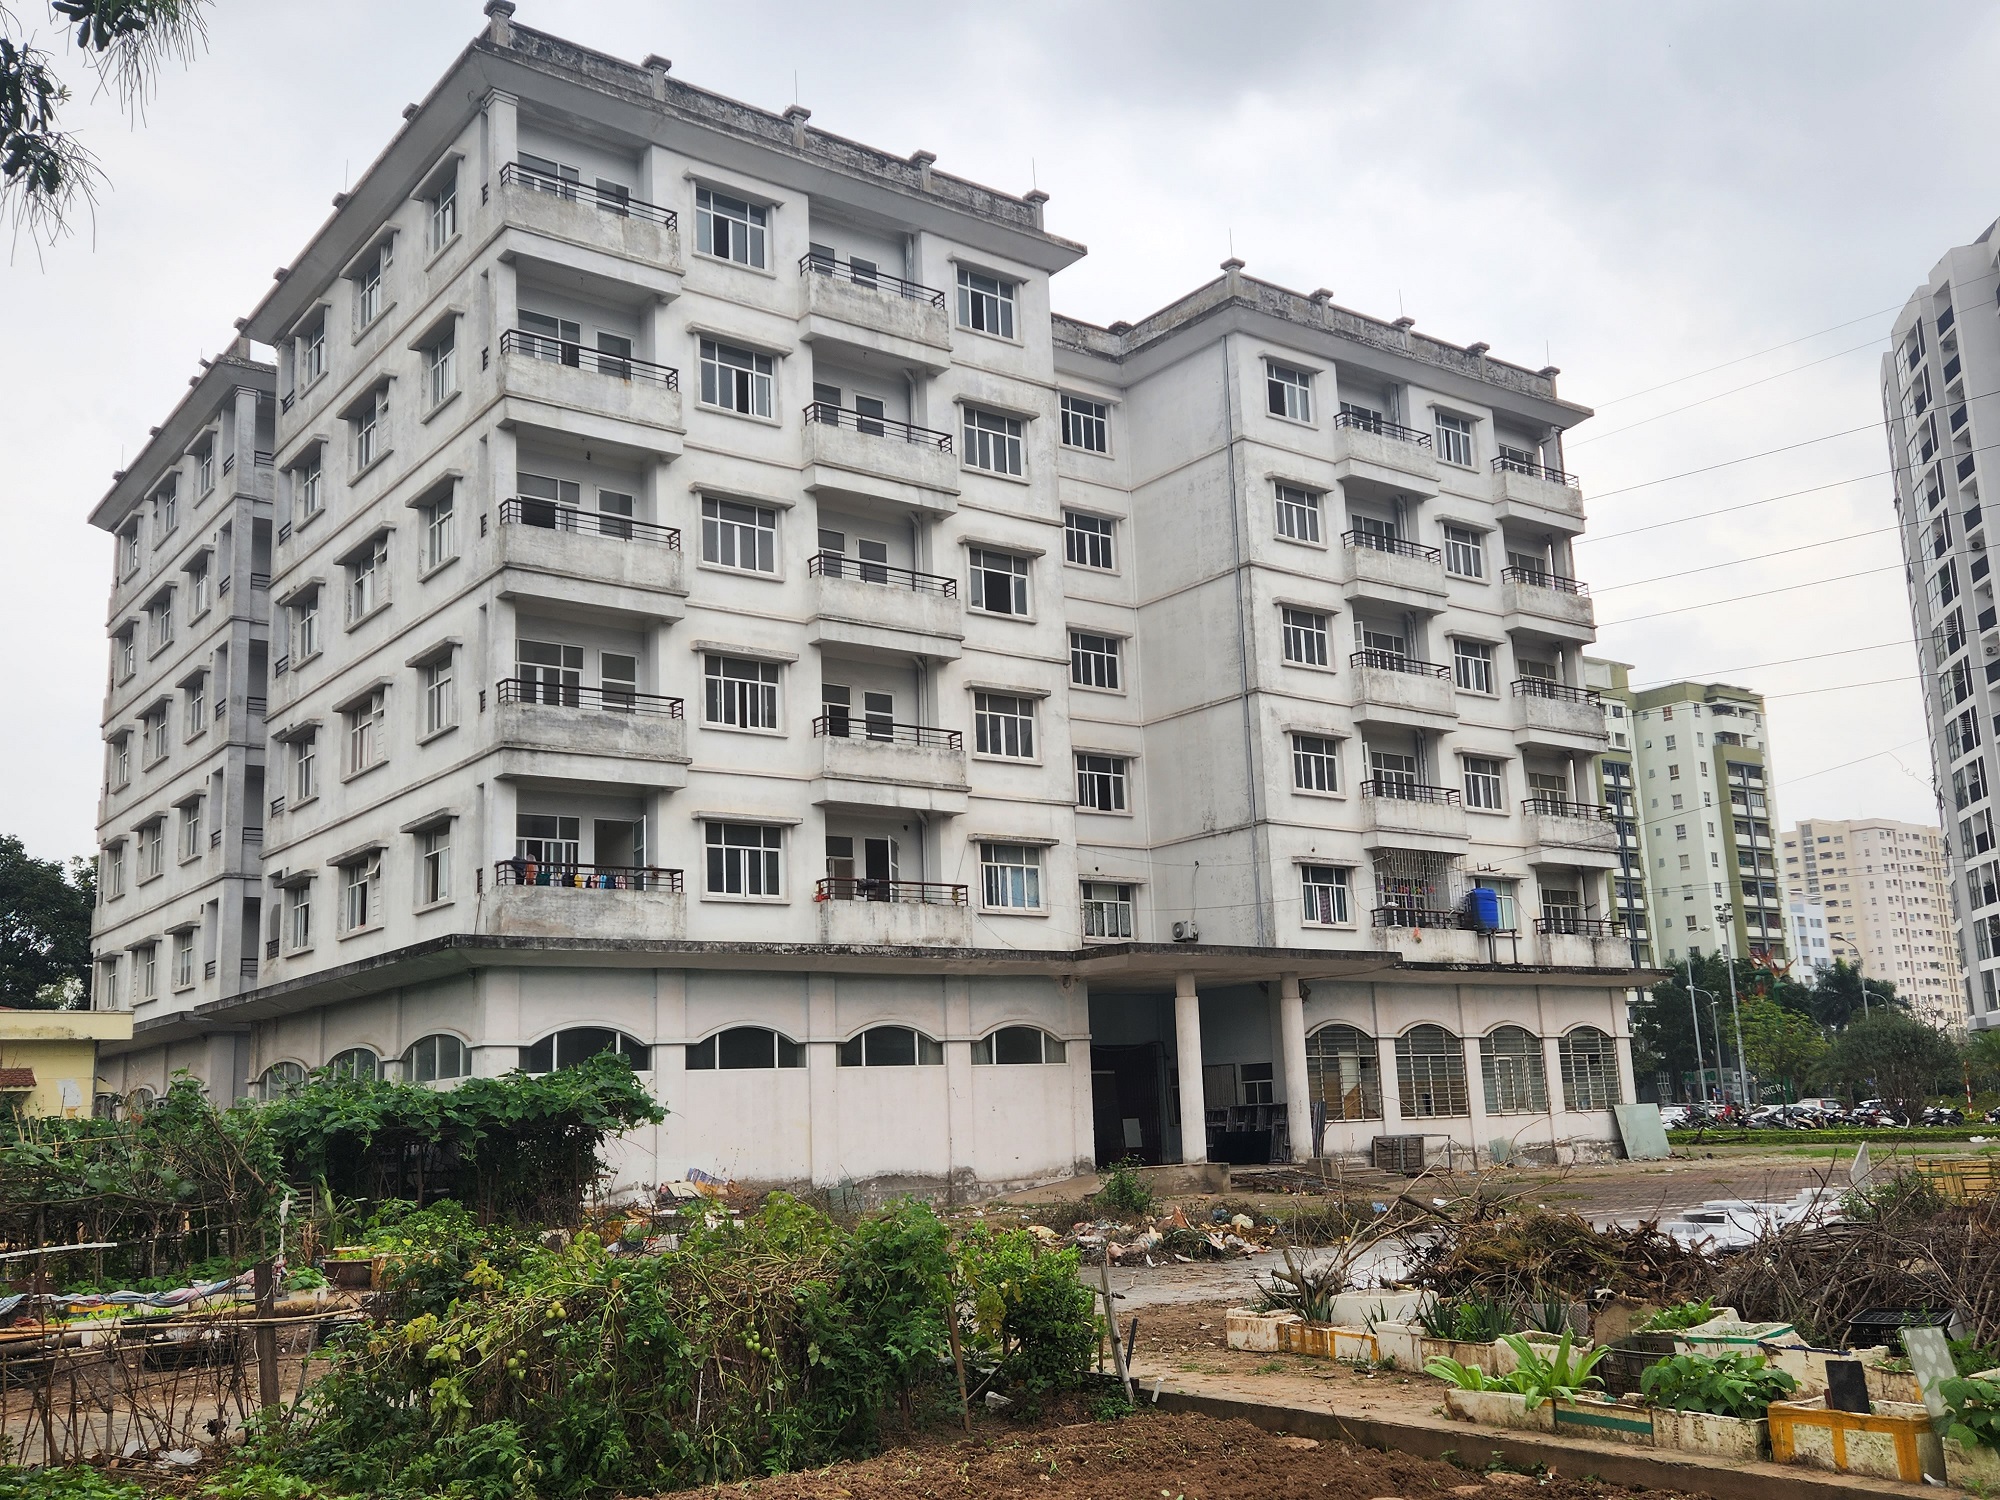 Khoảng 18.000 căn hộ tái định cư bỏ hoang tại Hà Nội và TP. HCM, làm gì để tránh lãng phí?- Ảnh 1.